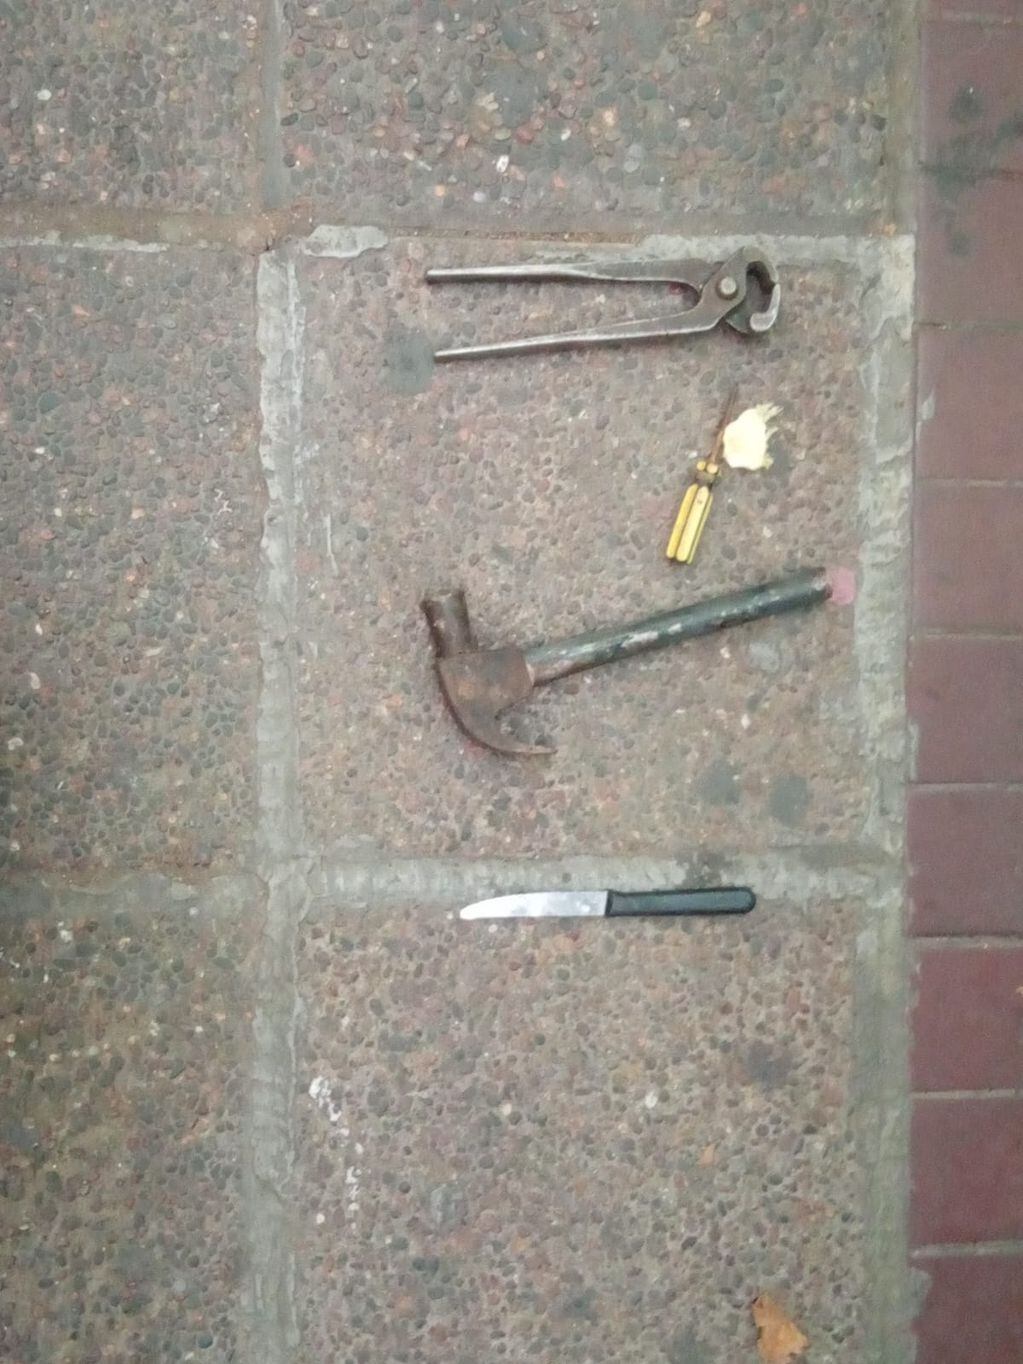 Las herramientas que llevaba el sospechozo